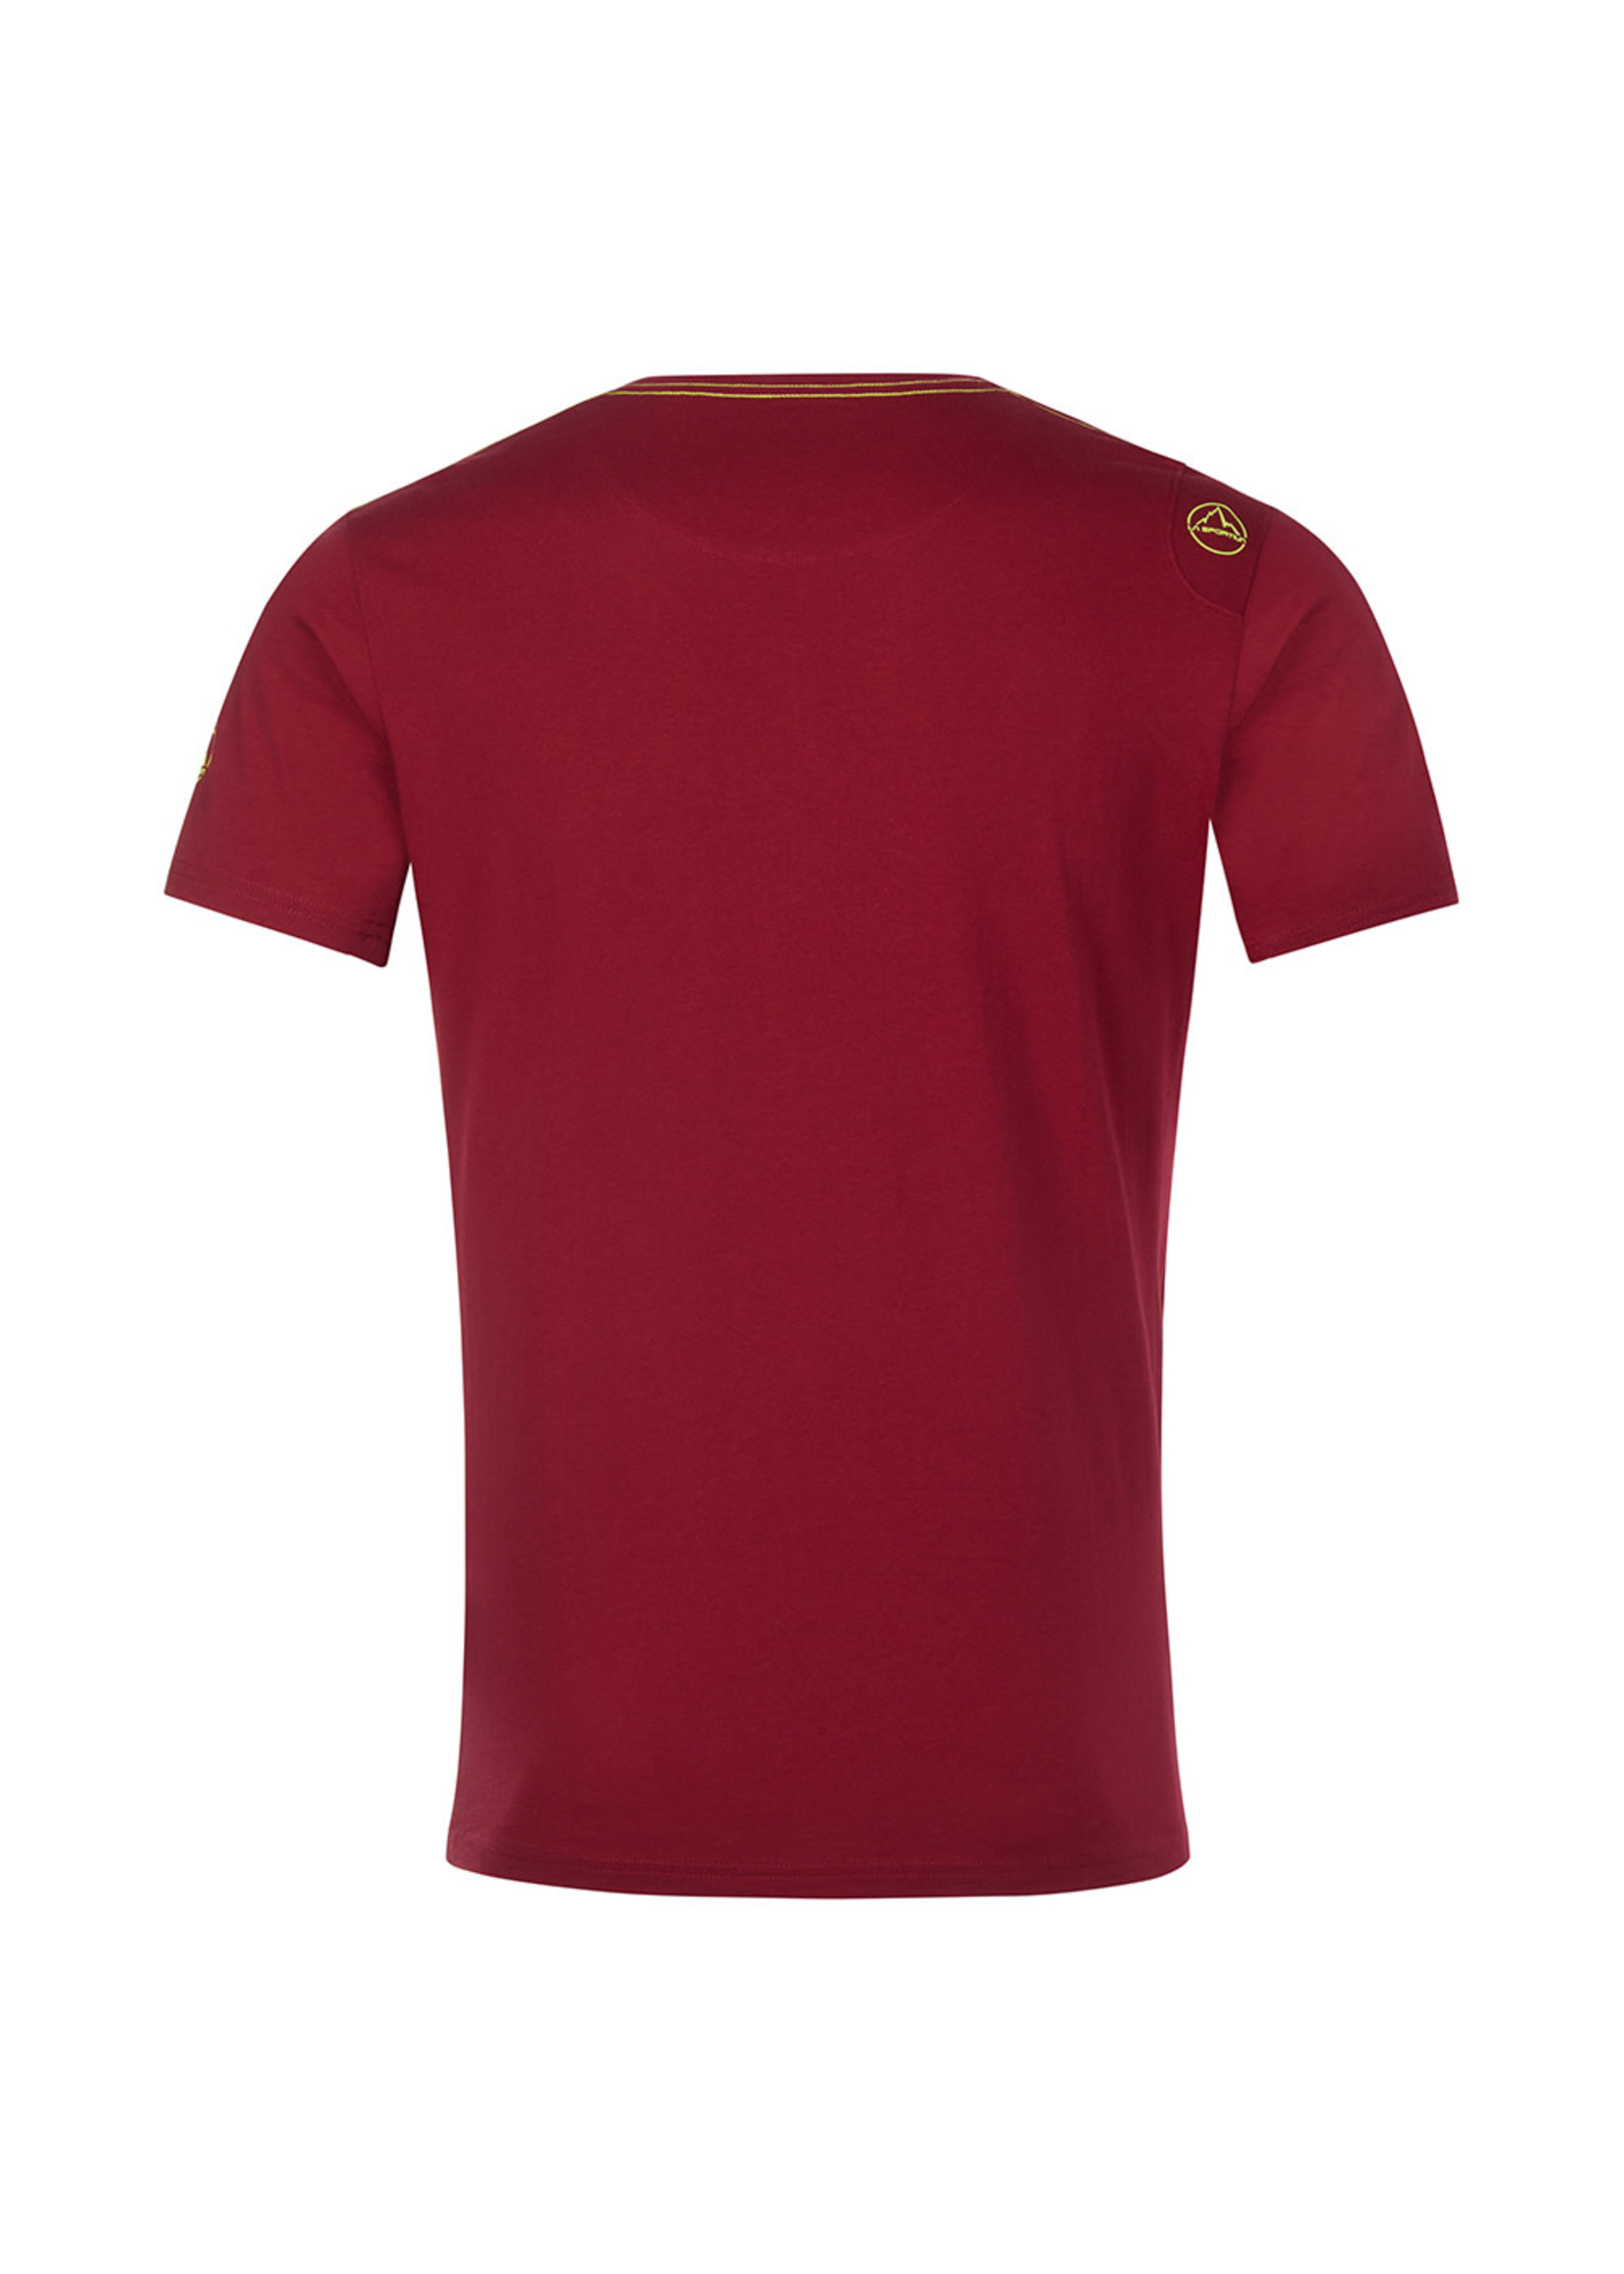 La Sportiva Van t-shirt M (t-shirt pour homme)